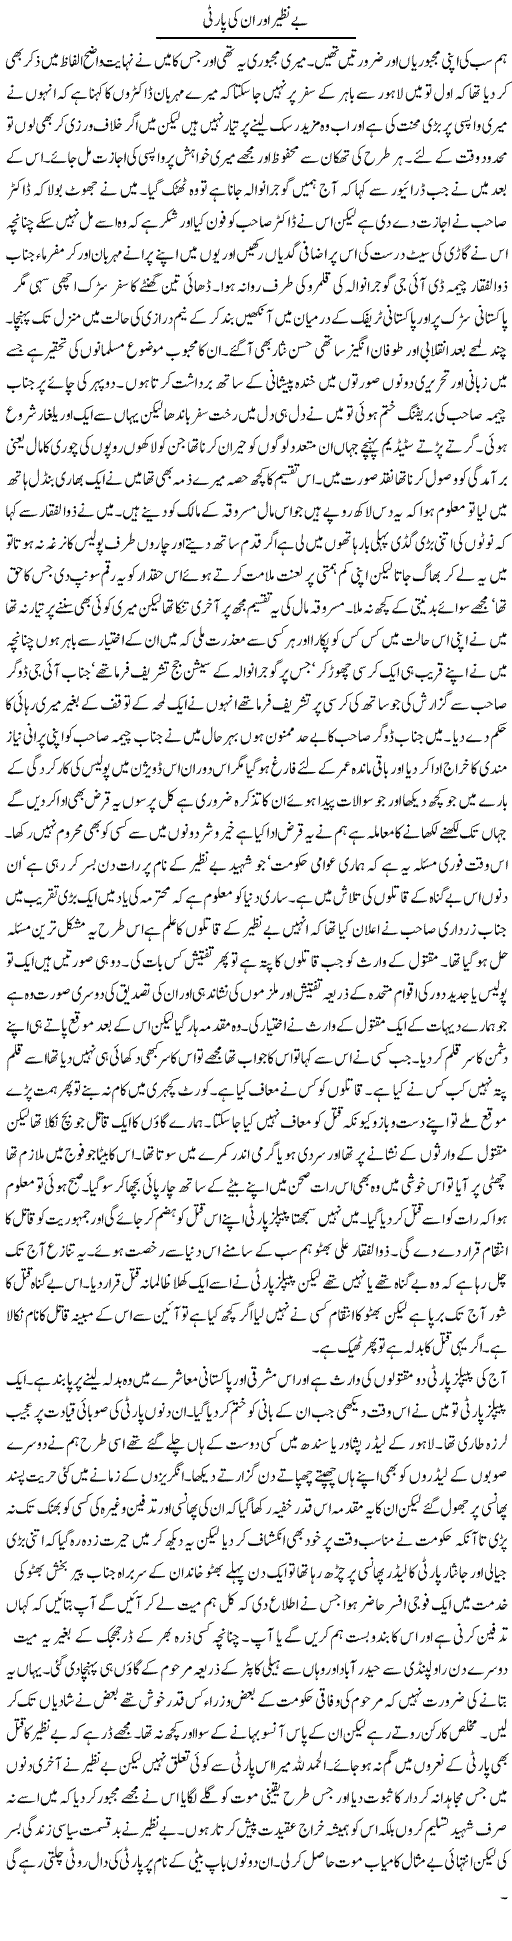 Benazir aur PPP Express Column Abdul Qadir Hasan 29 April 2010